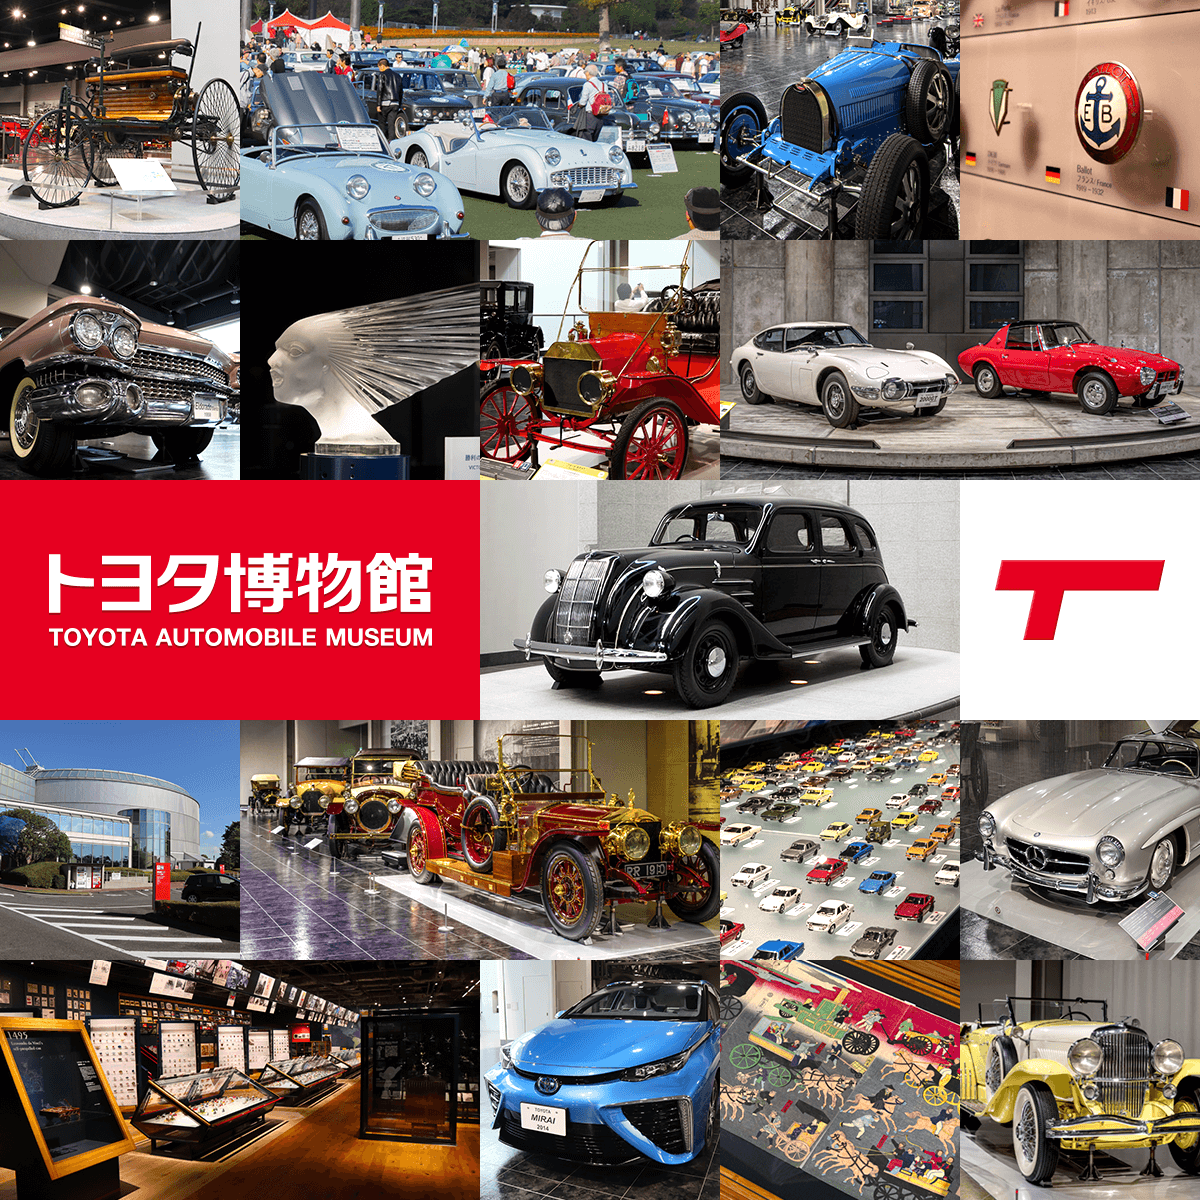 toyota-automobile-museum.jp